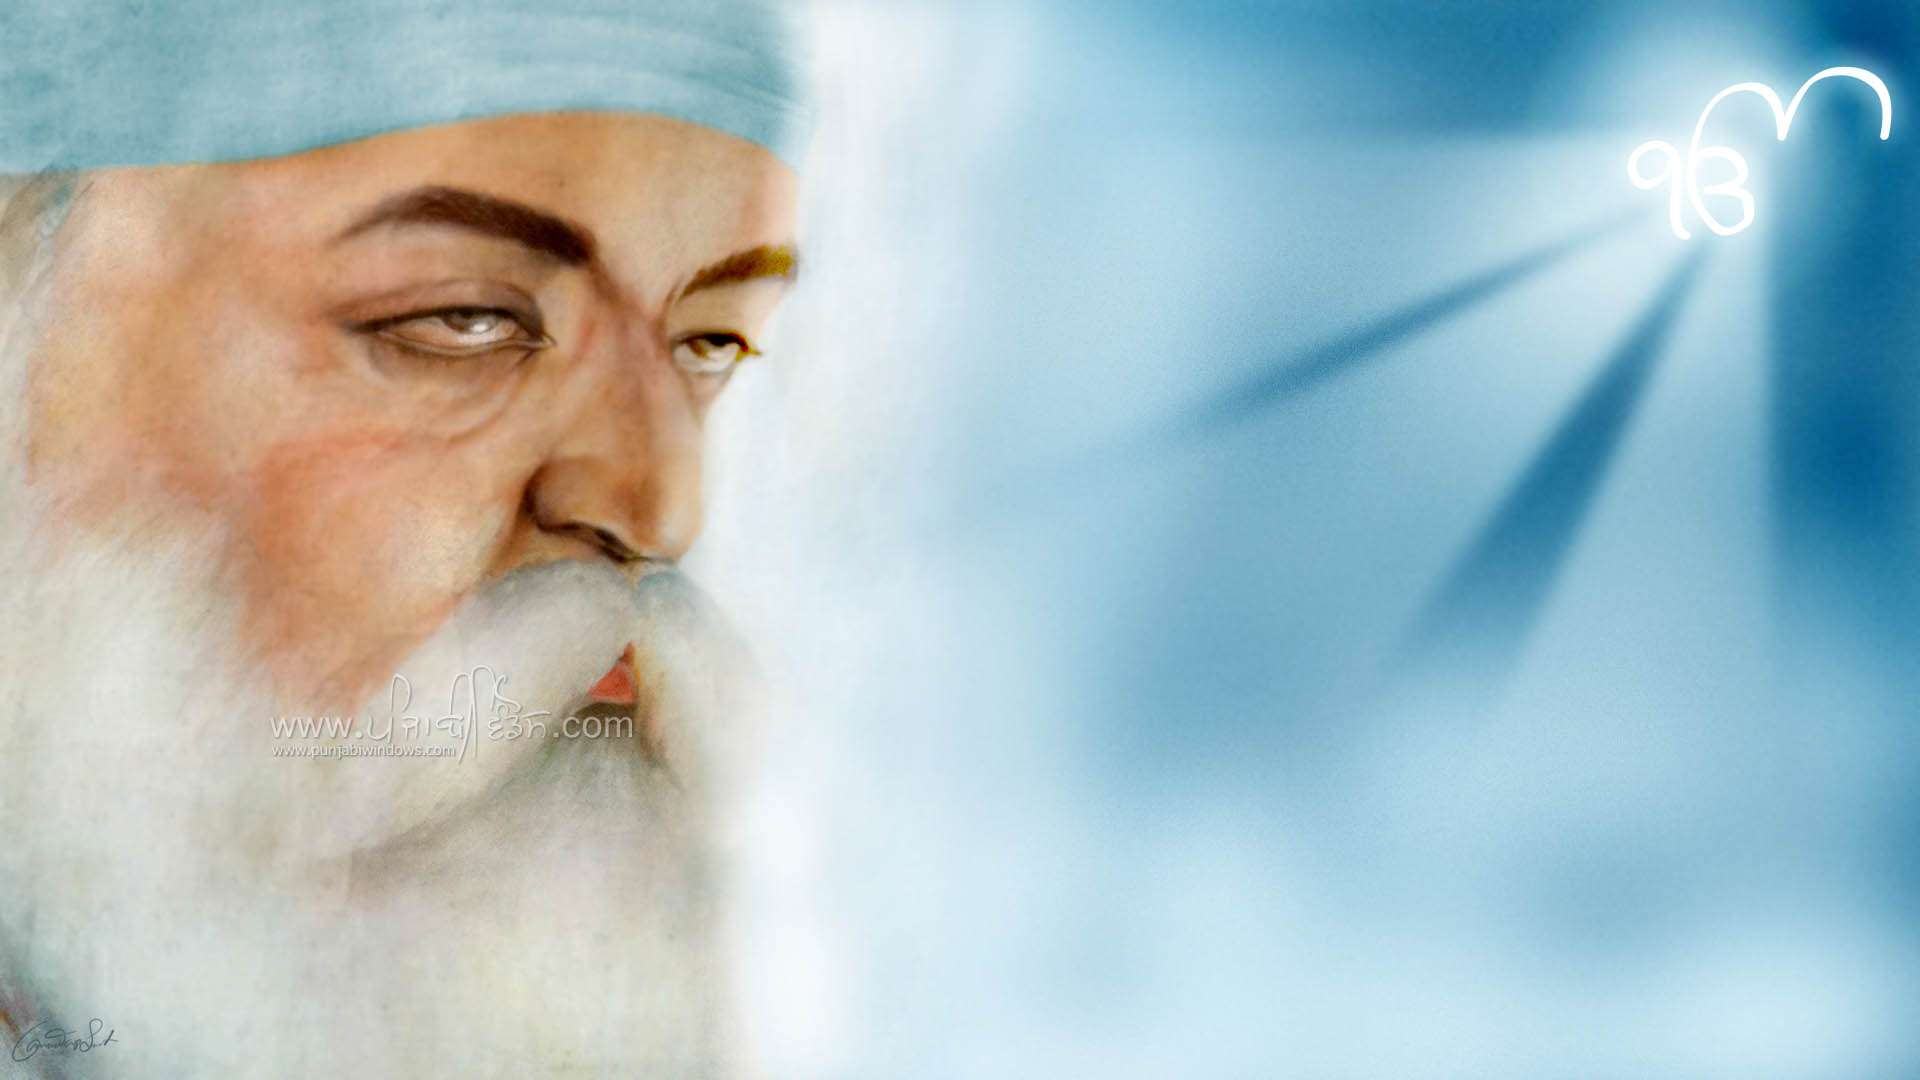 Guru Nanak Dev Ji HD Wallpaper